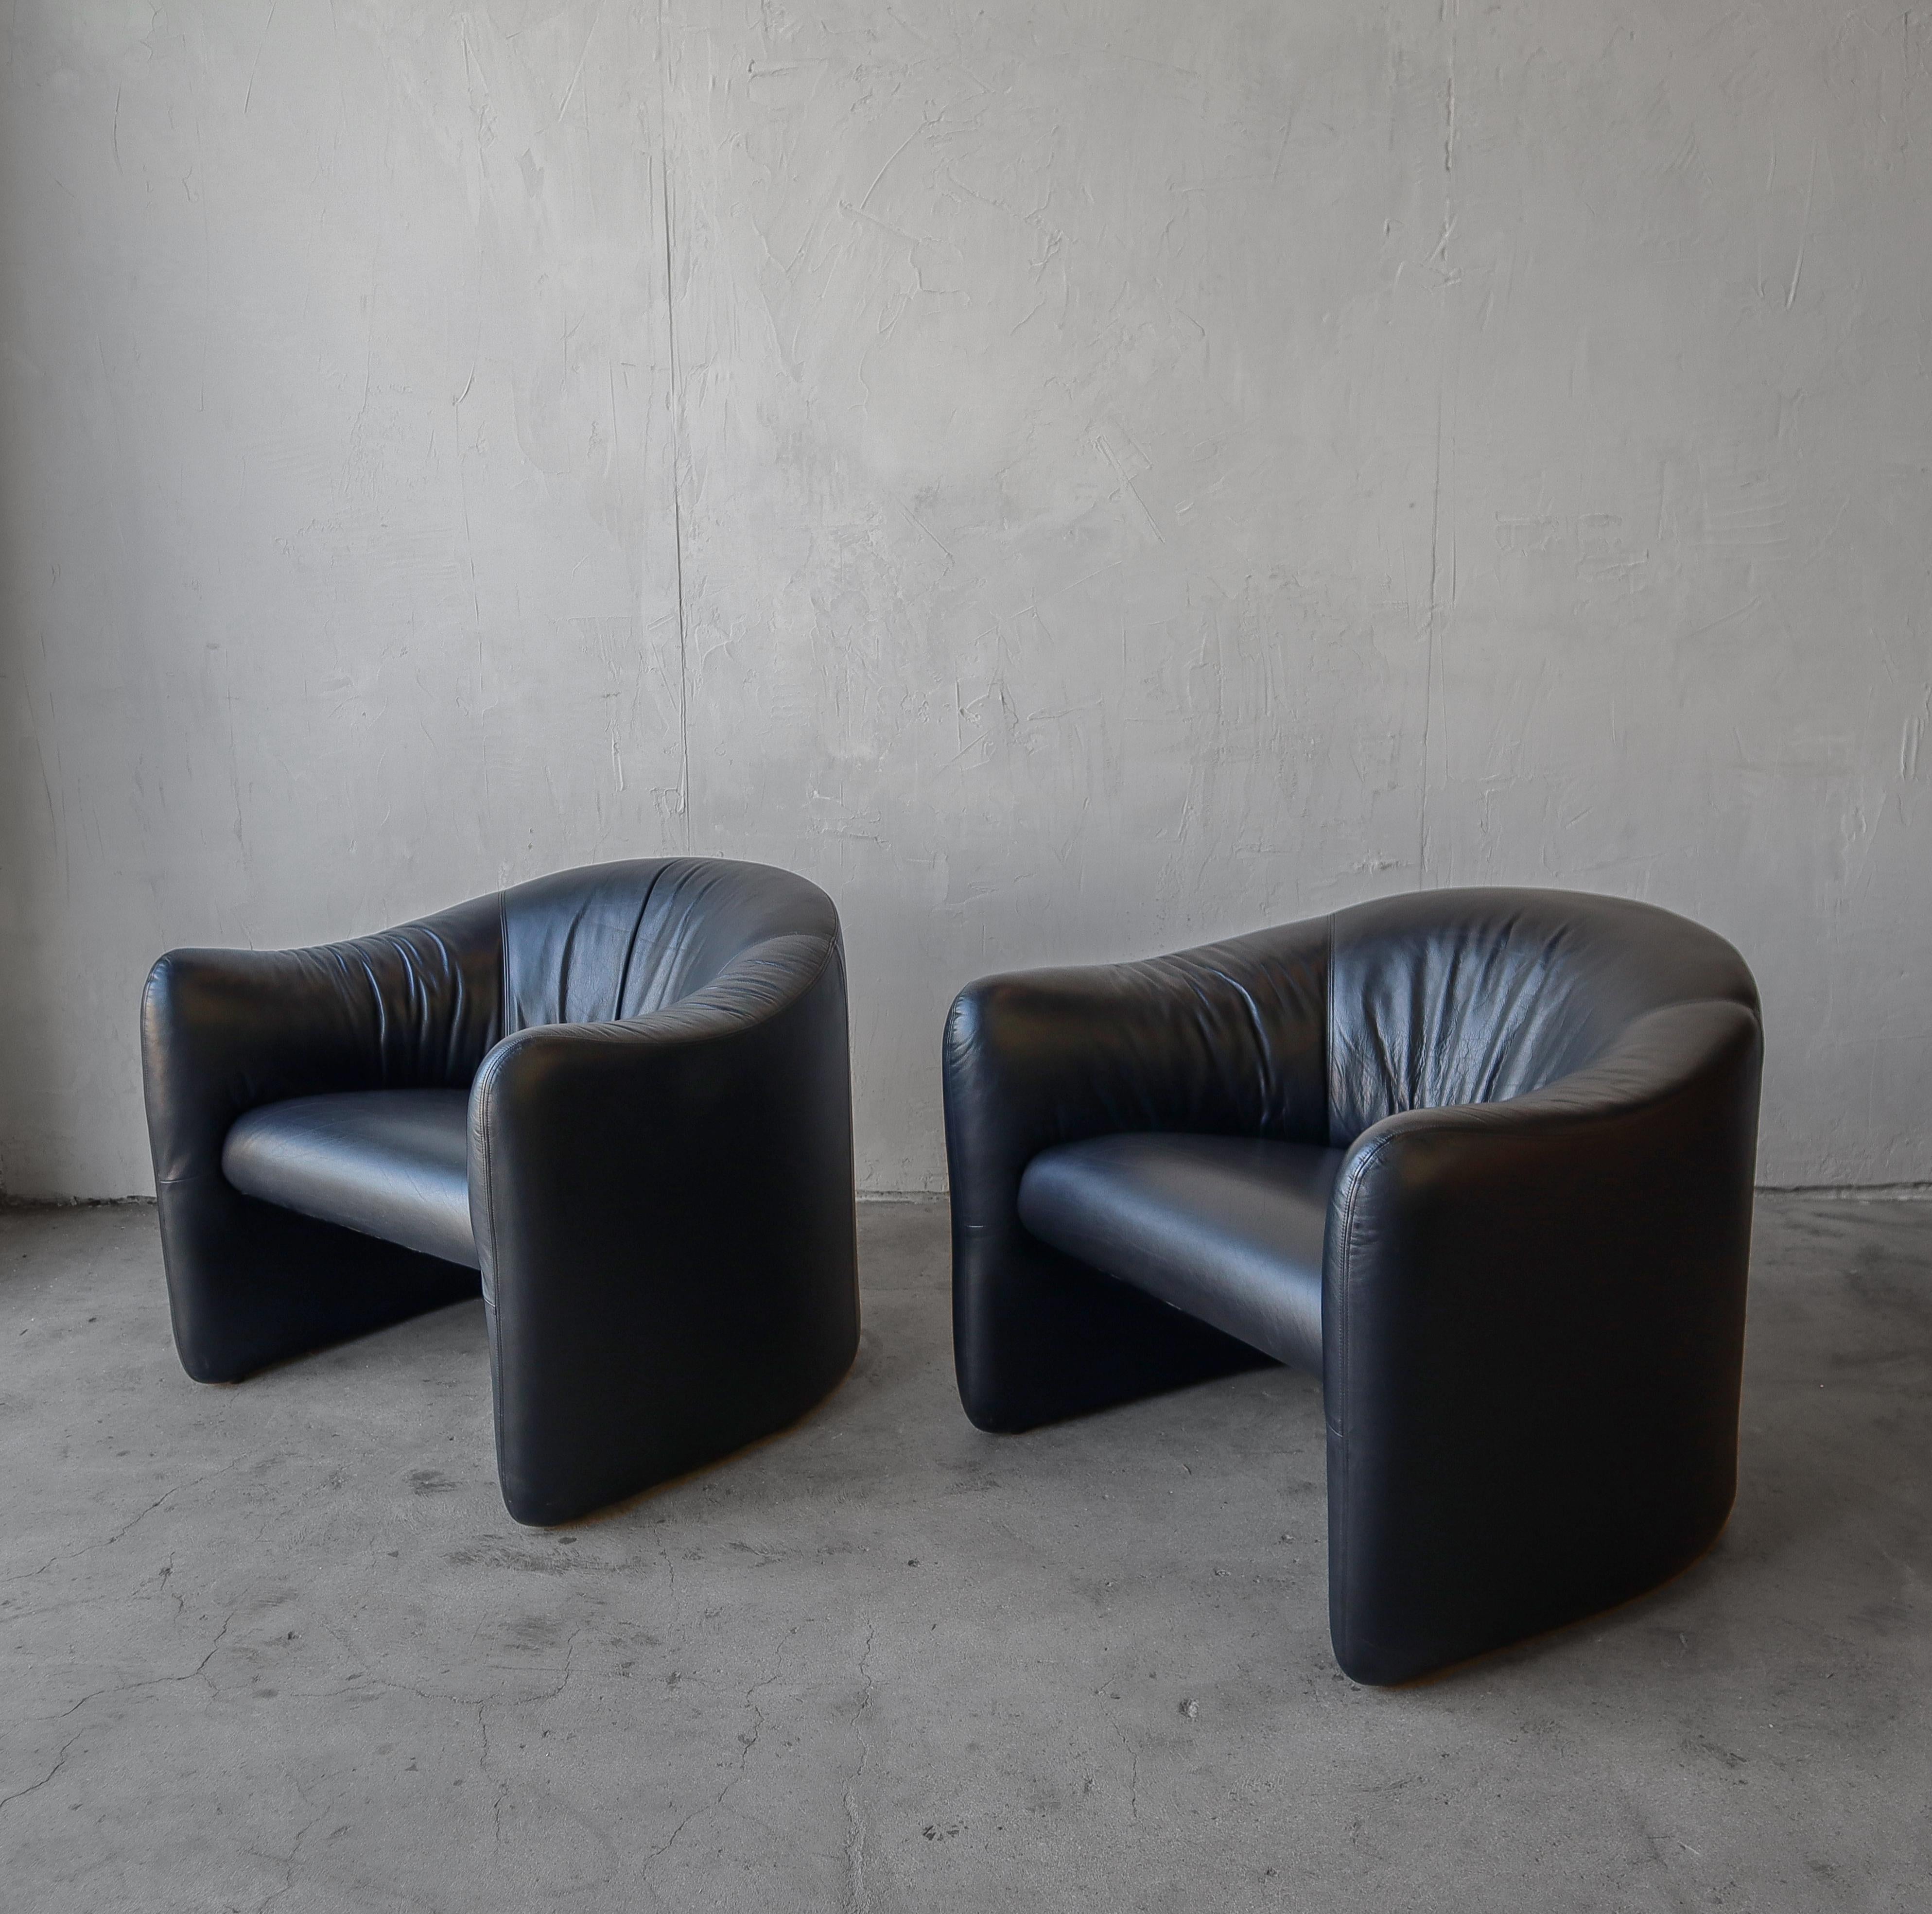 Schönes Paar originaler Post Modern Lounge Chairs von Jules Heumann für Metropolitan Furniture. 

Original schwarzes Leder ist in gutem Zustand zeigt altersgerechte Patina, aber keine Schäden oder erhebliche Abnutzung. Keine Gerüche oder Flecken.